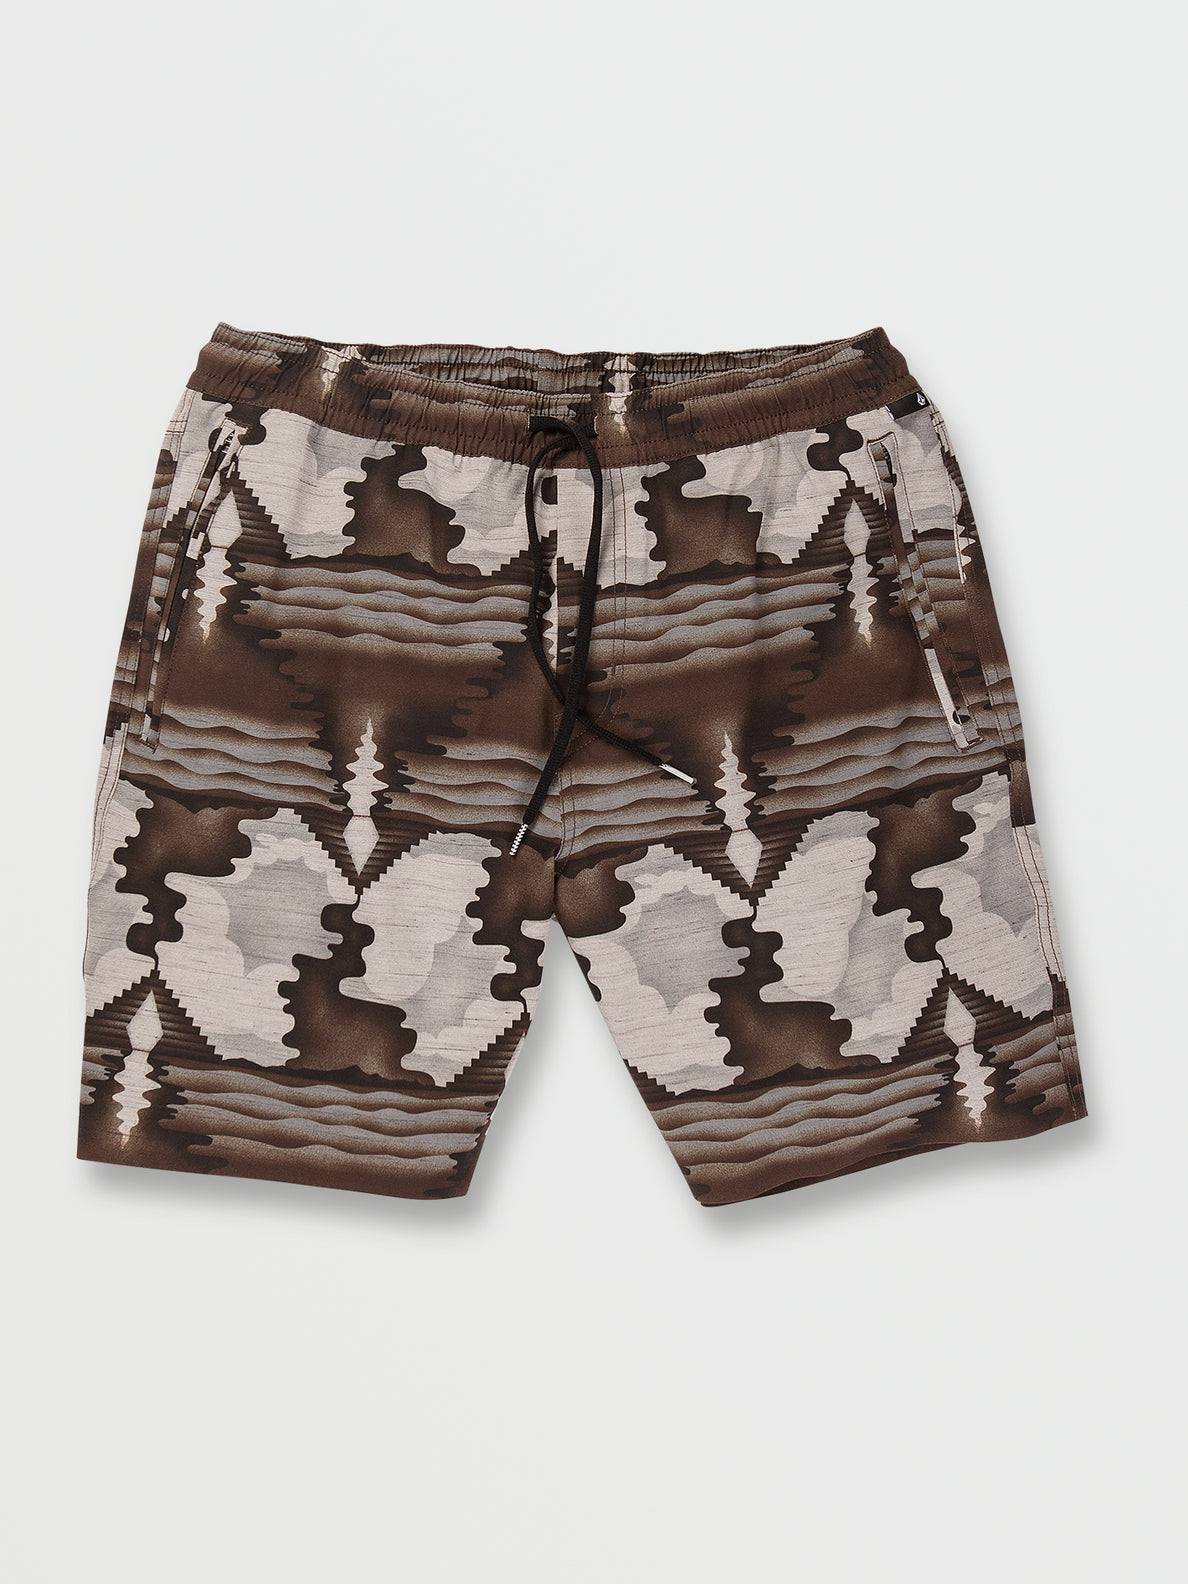 Wrecpack Hybrid Shorts - Whitecap Grey – Volcom US